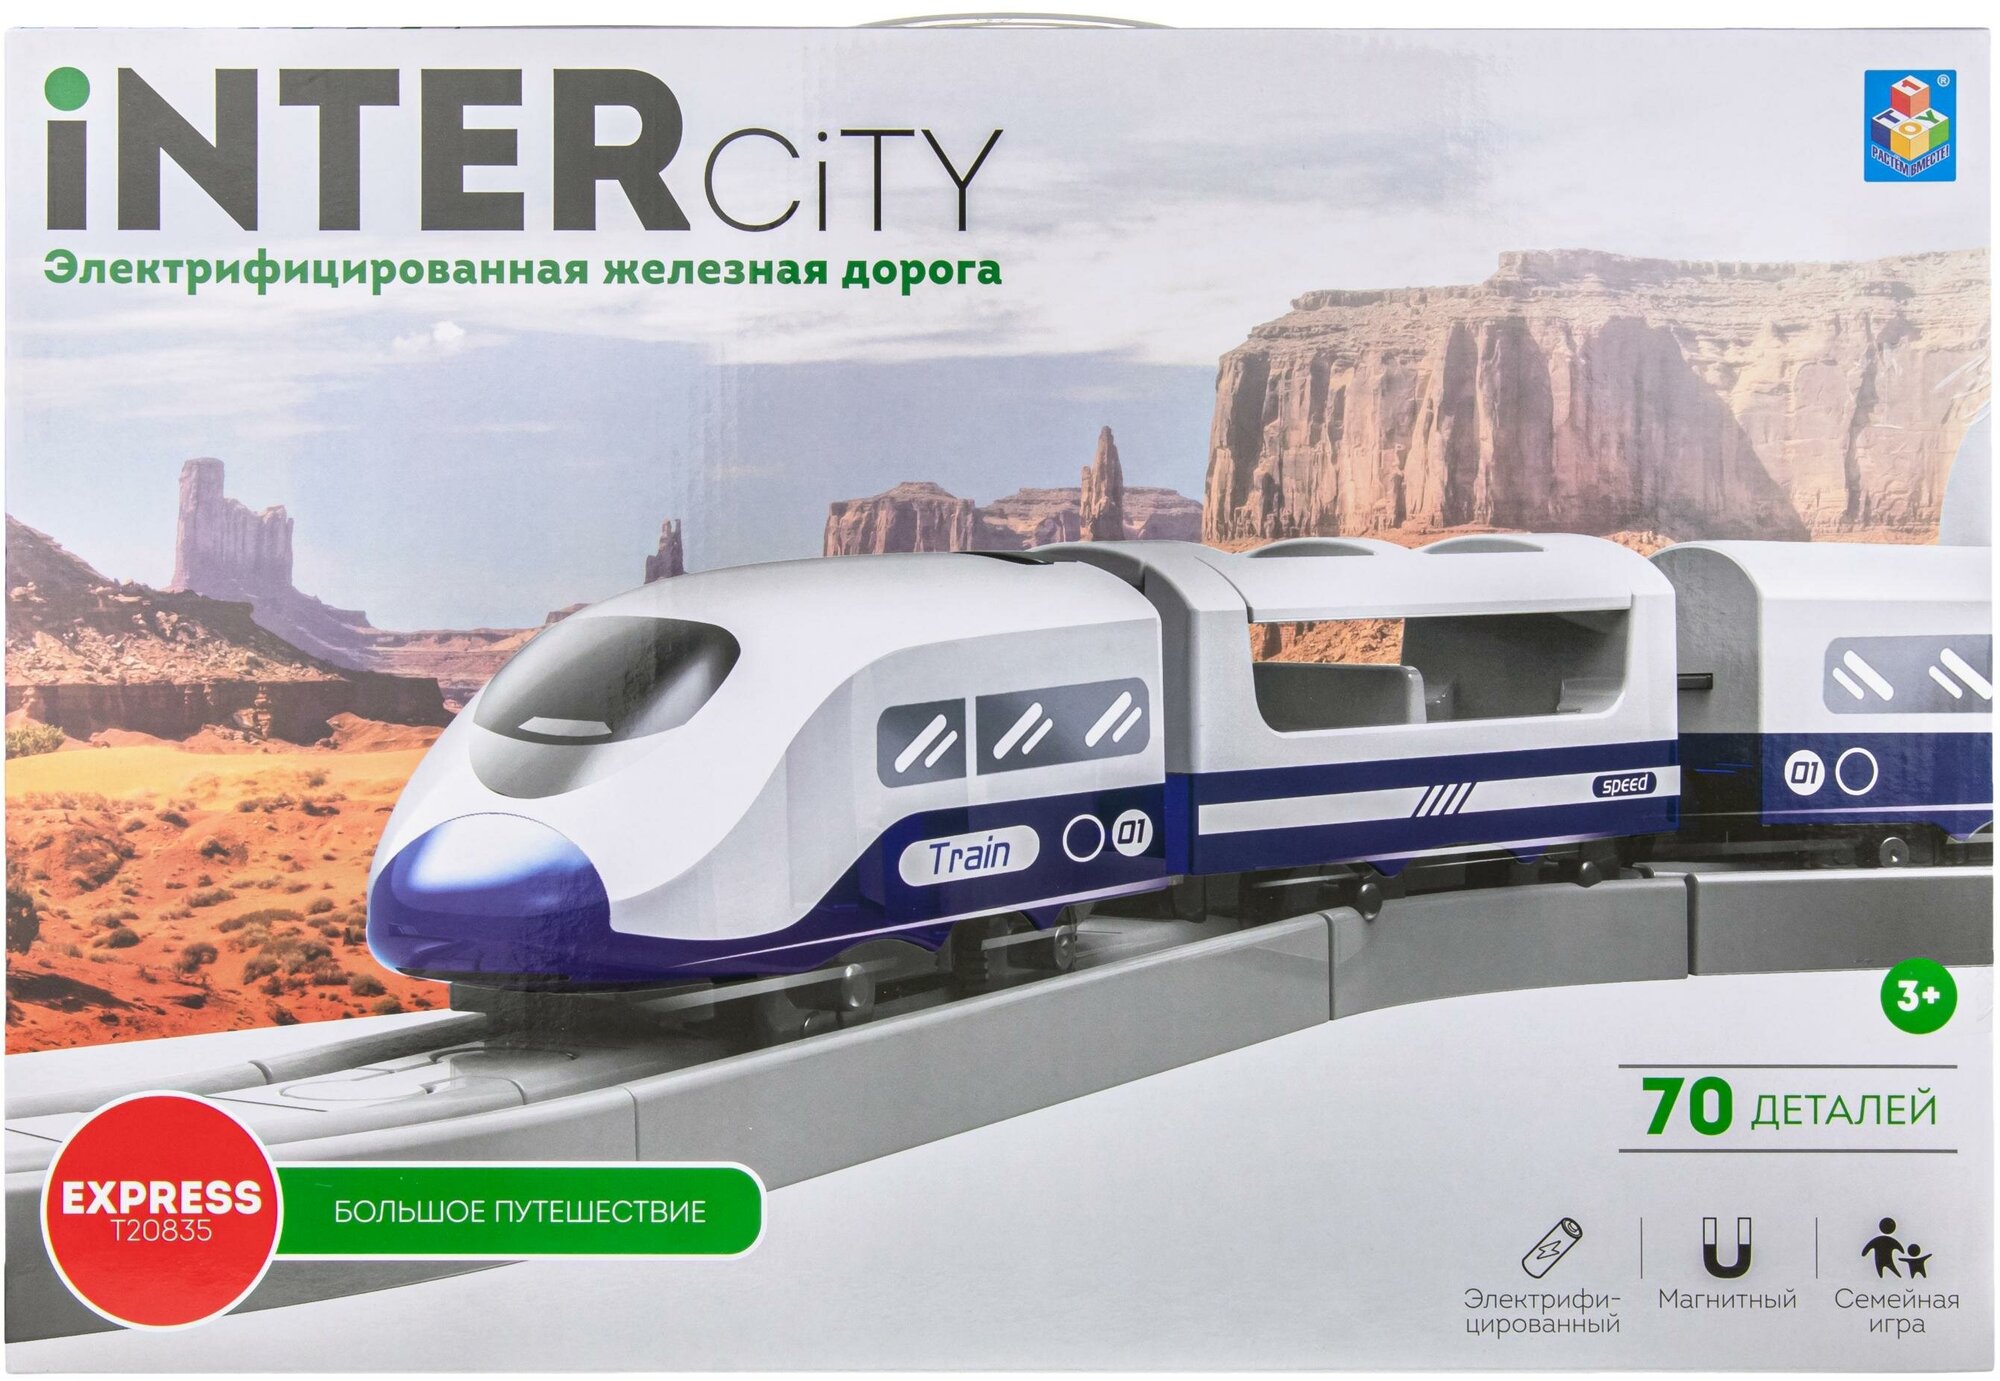 Железная дорога InterCity Express "Большое путешествие" 70 дет., Т20835 1toy - фото №8